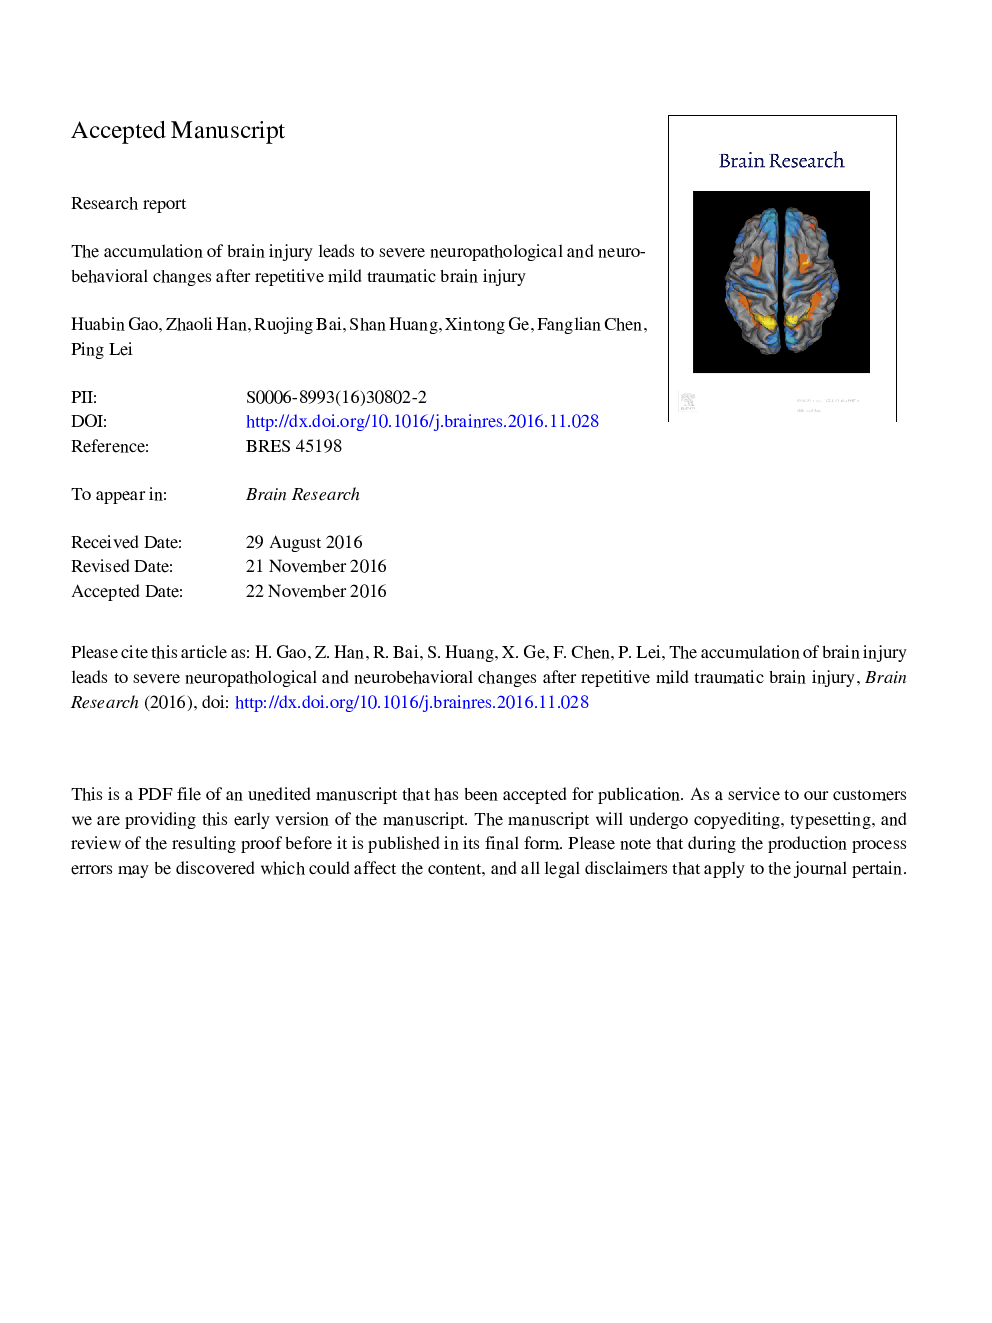 تجمع آسیب مغزی منجر به تغییرات شدید نوروپاتولوژیک و عصبی رفتاری پس از آسیب مغزی تکراری شدید می شود 